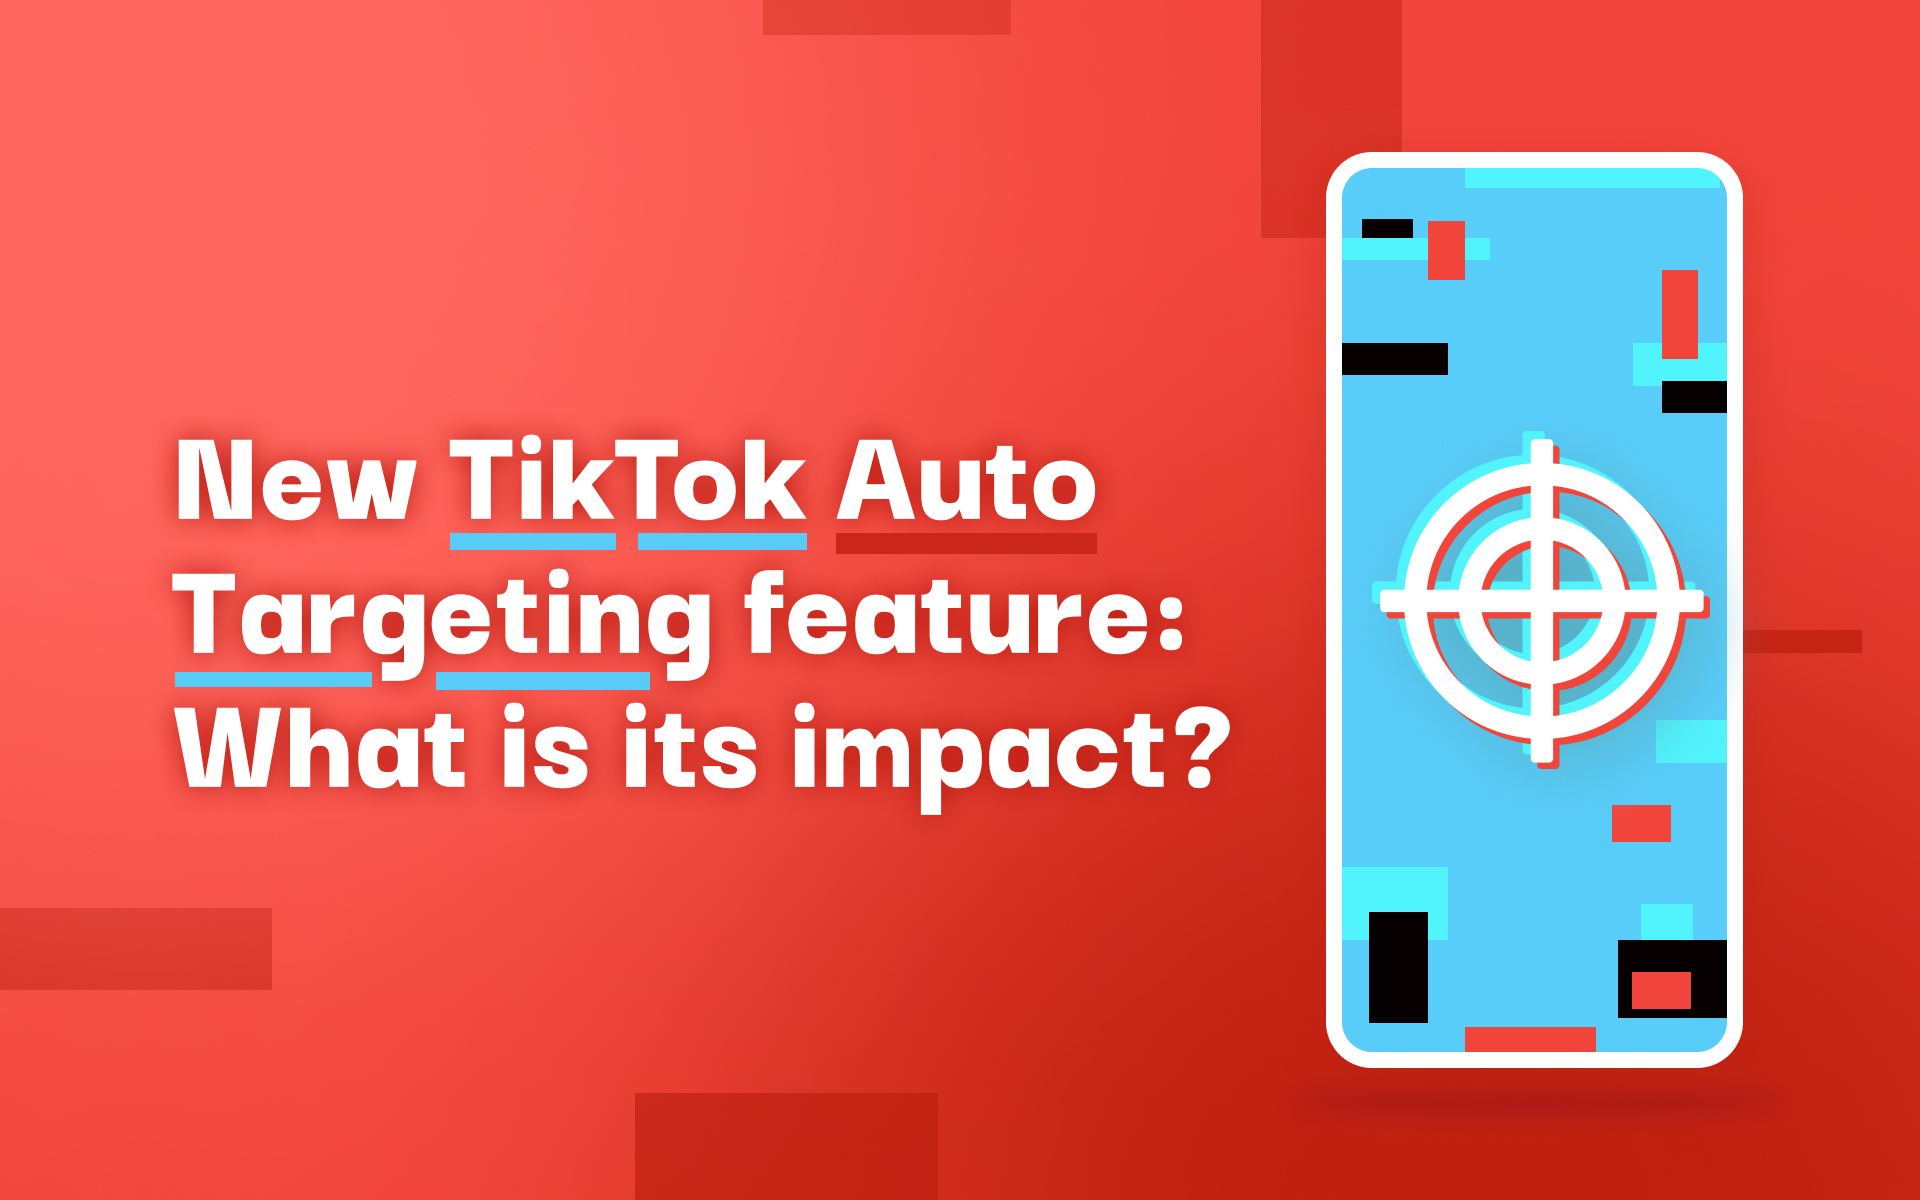 TikTok Auto Targeting